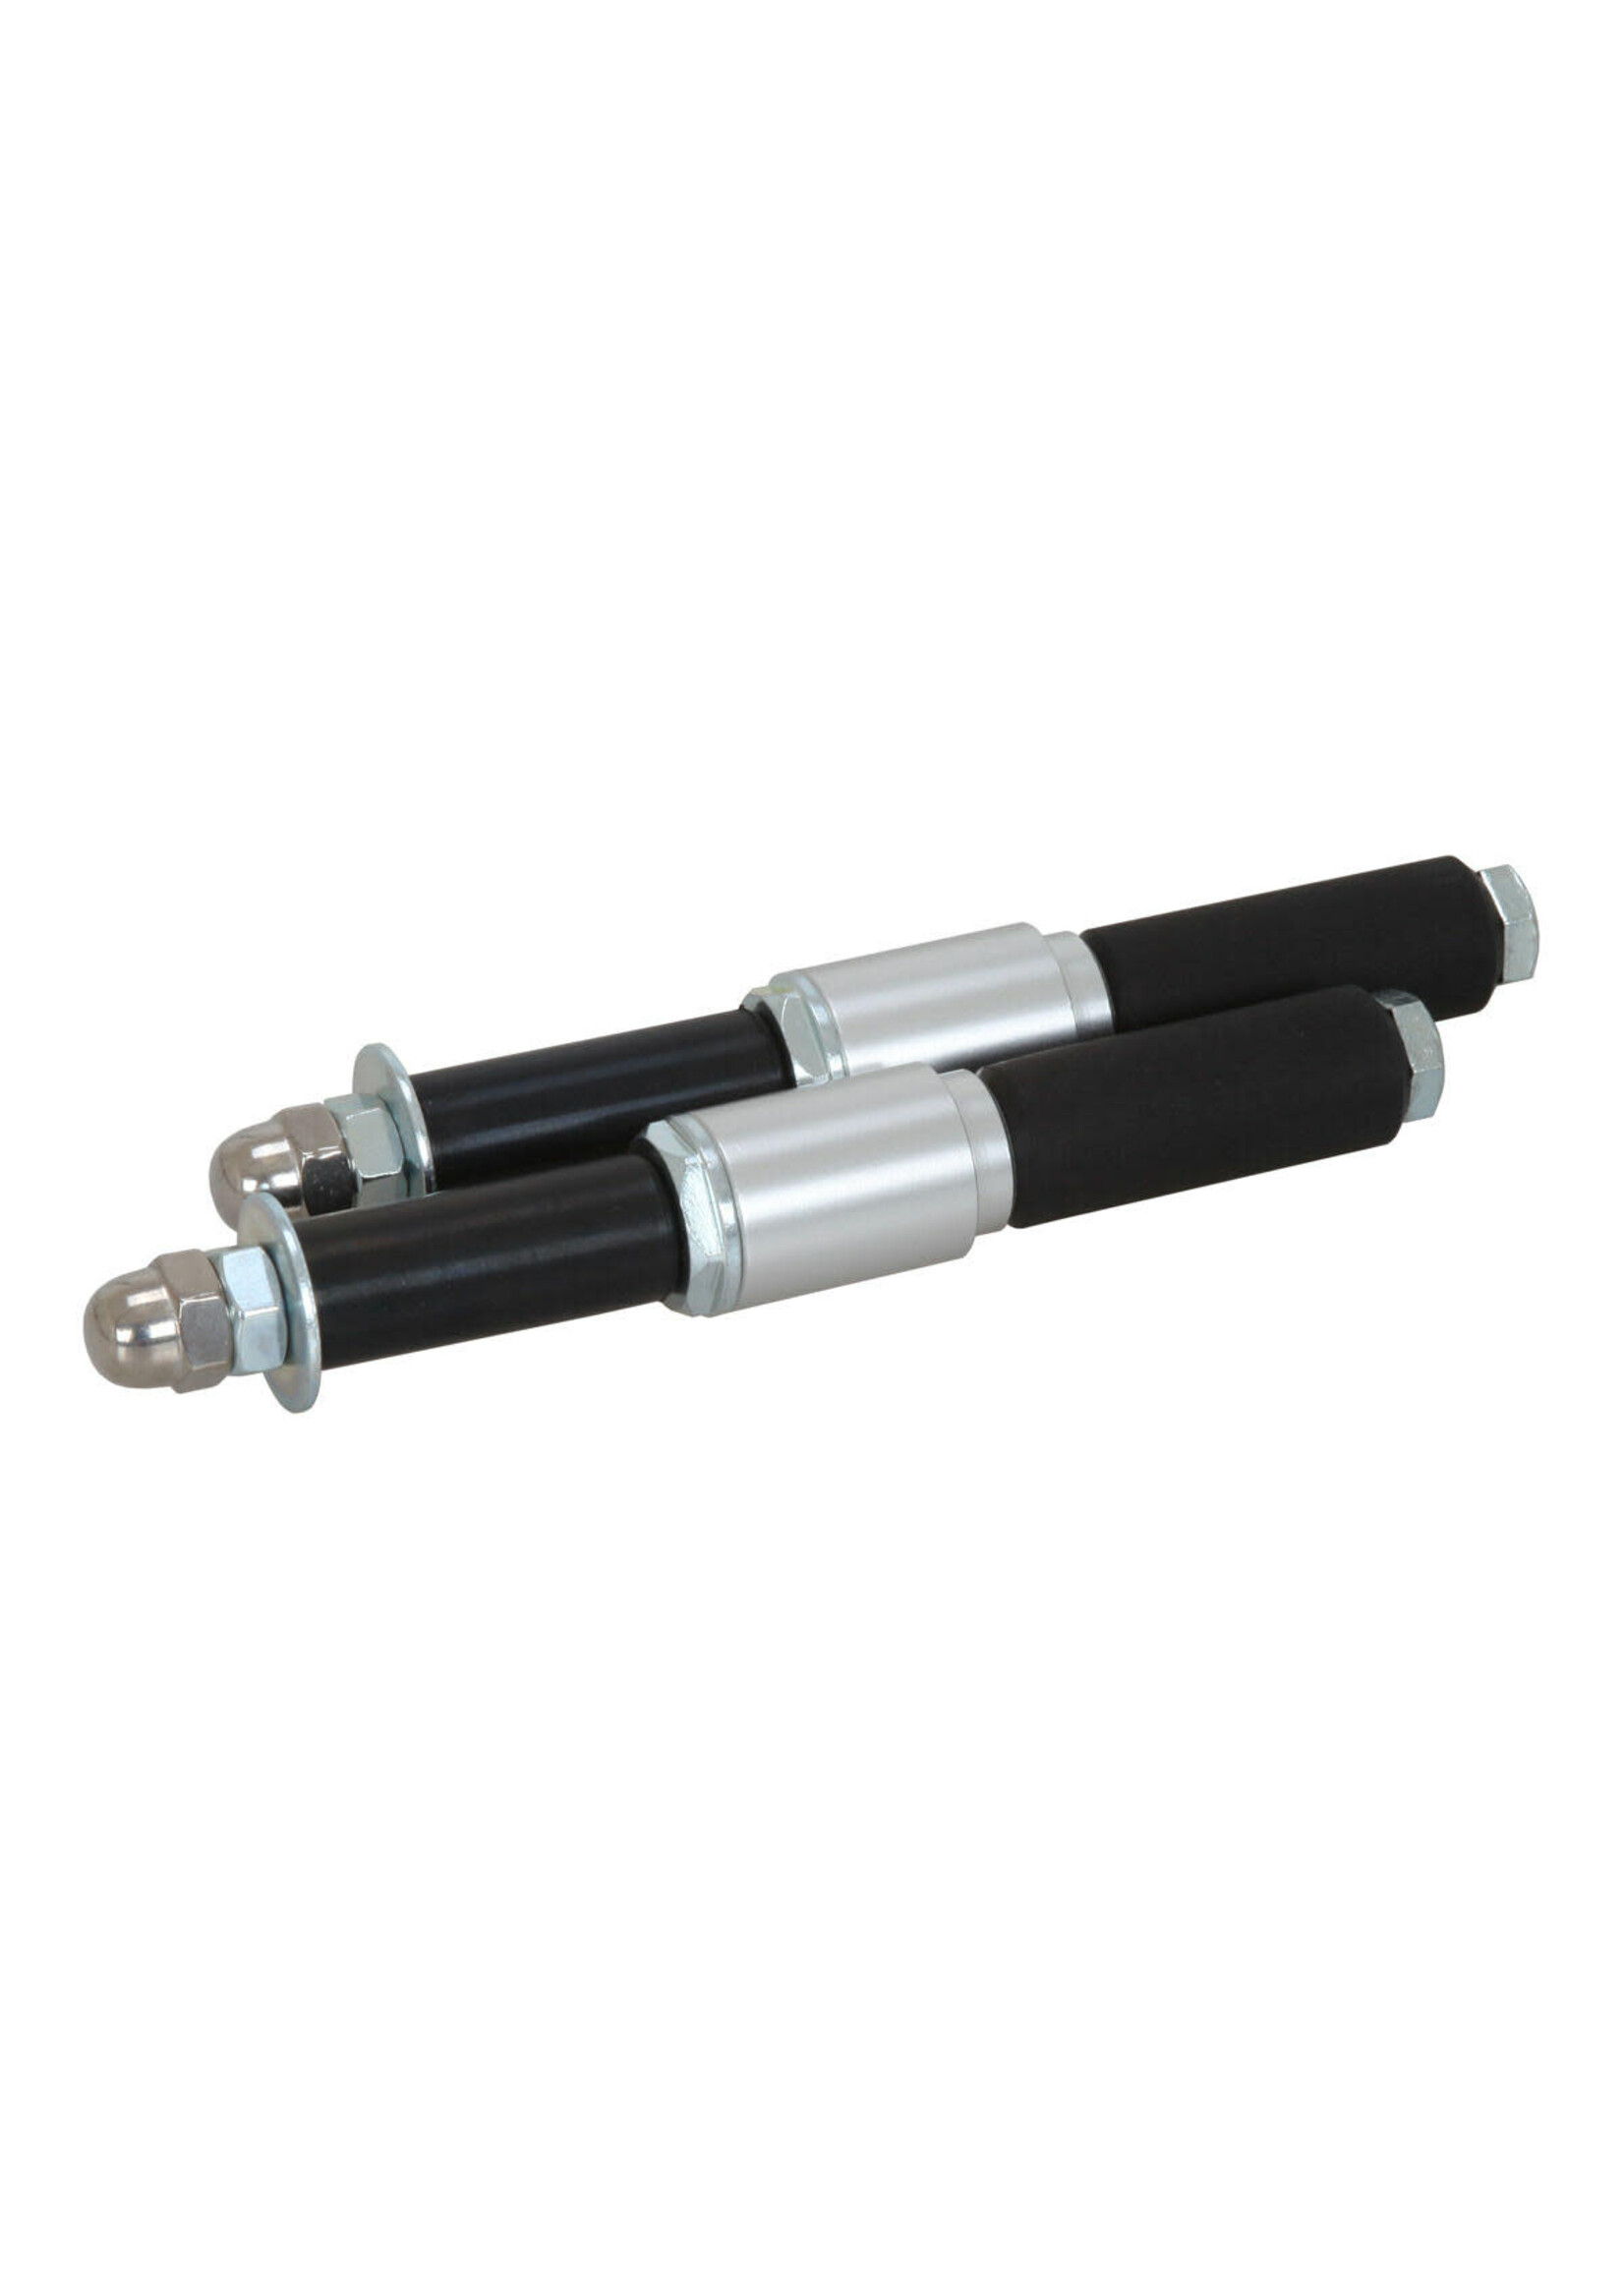 Universal Parts Schraubensatz für Rohr D.28 mm geeignet für die Befestigung der hinteren Stoßstange von Minikart.